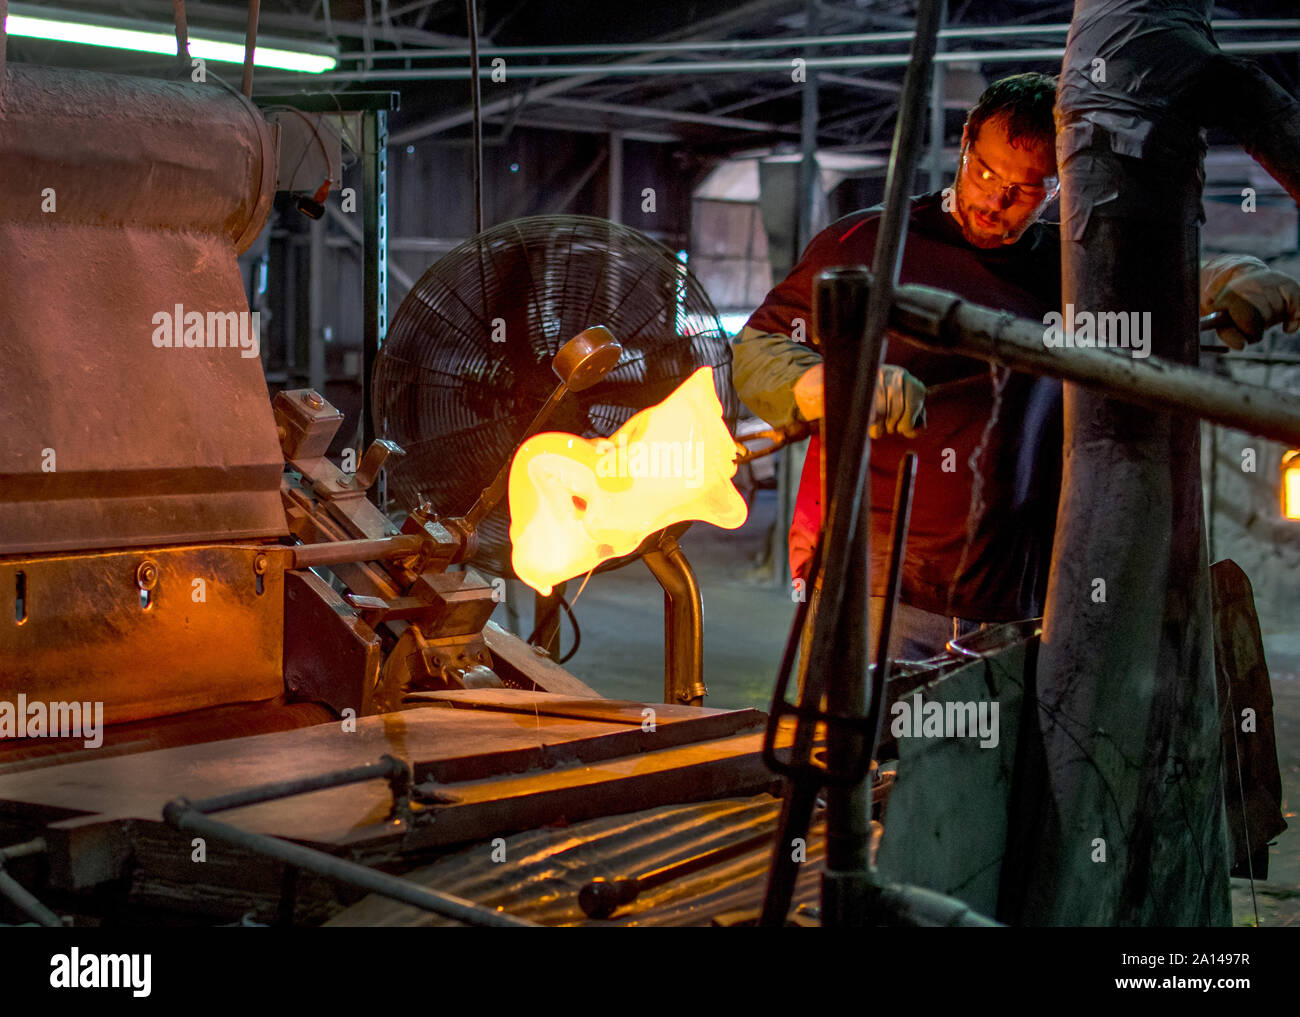 27 sett 2019 Kokomo Indiana America;un lavoratore di vetro utilizza strumenti di ferro e guanti pesanti per il sollevamento p un mucchio di vetro fuso. Egli ha poi impasti e volute i colori Foto Stock